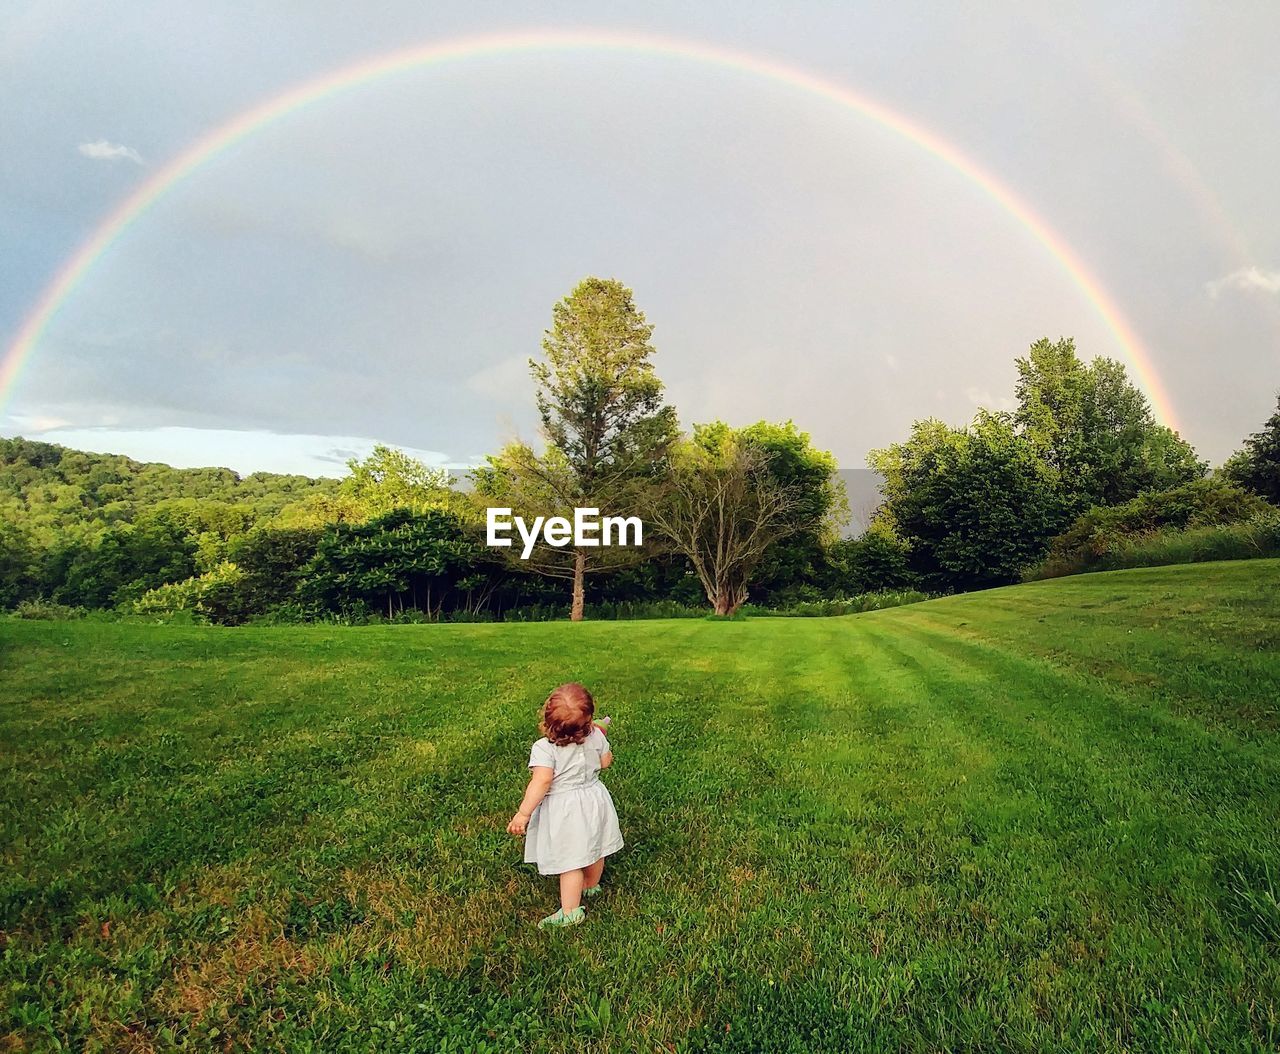 Full length of girl standing on field against rainbow in sky